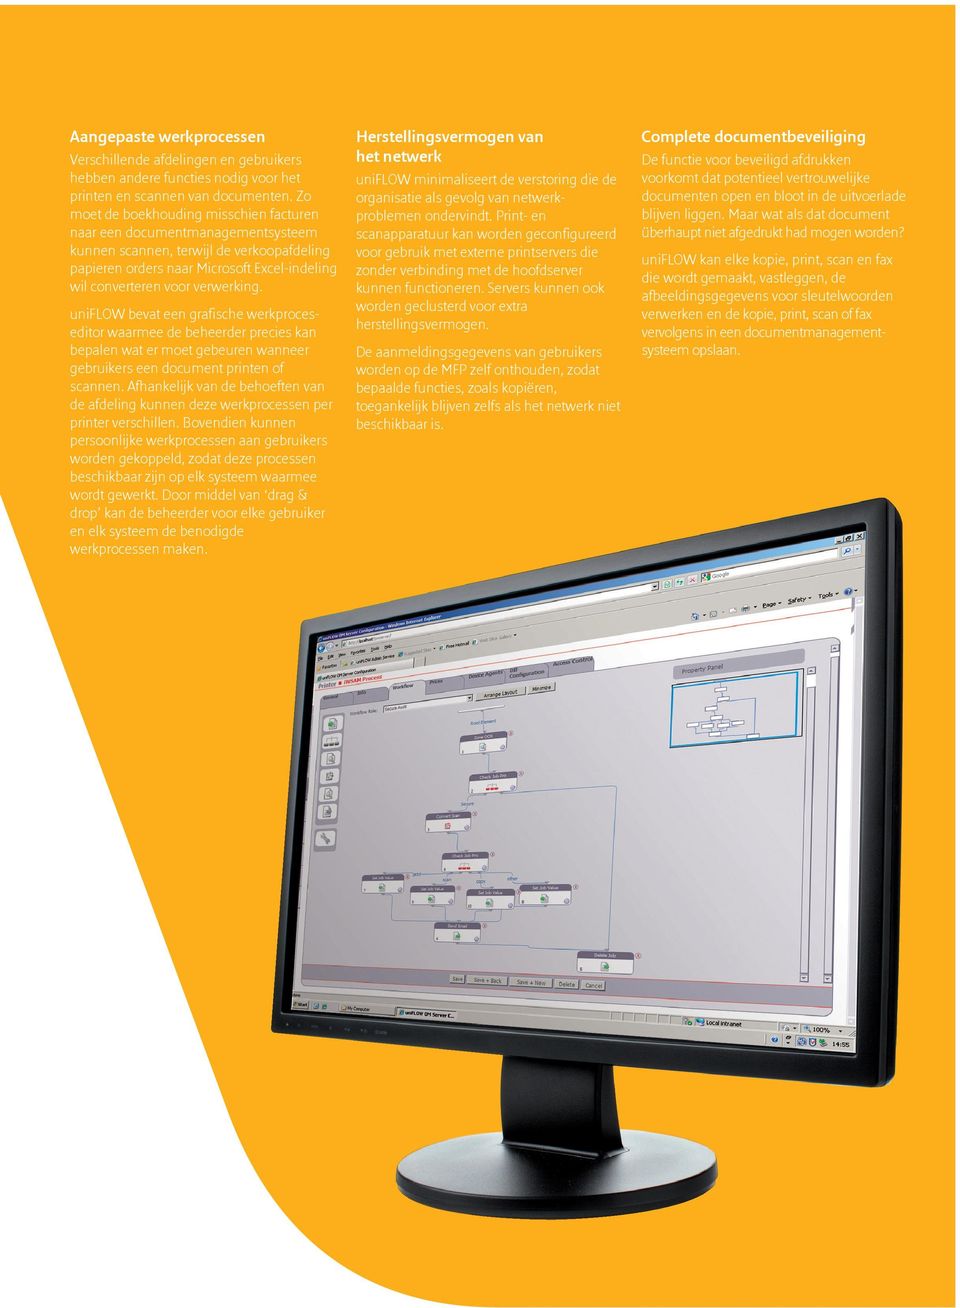 uniflow bevat een grafische werkproceseditor waarmee de beheerder precies kan bepalen wat er moet gebeuren wanneer gebruikers een document printen of scannen.